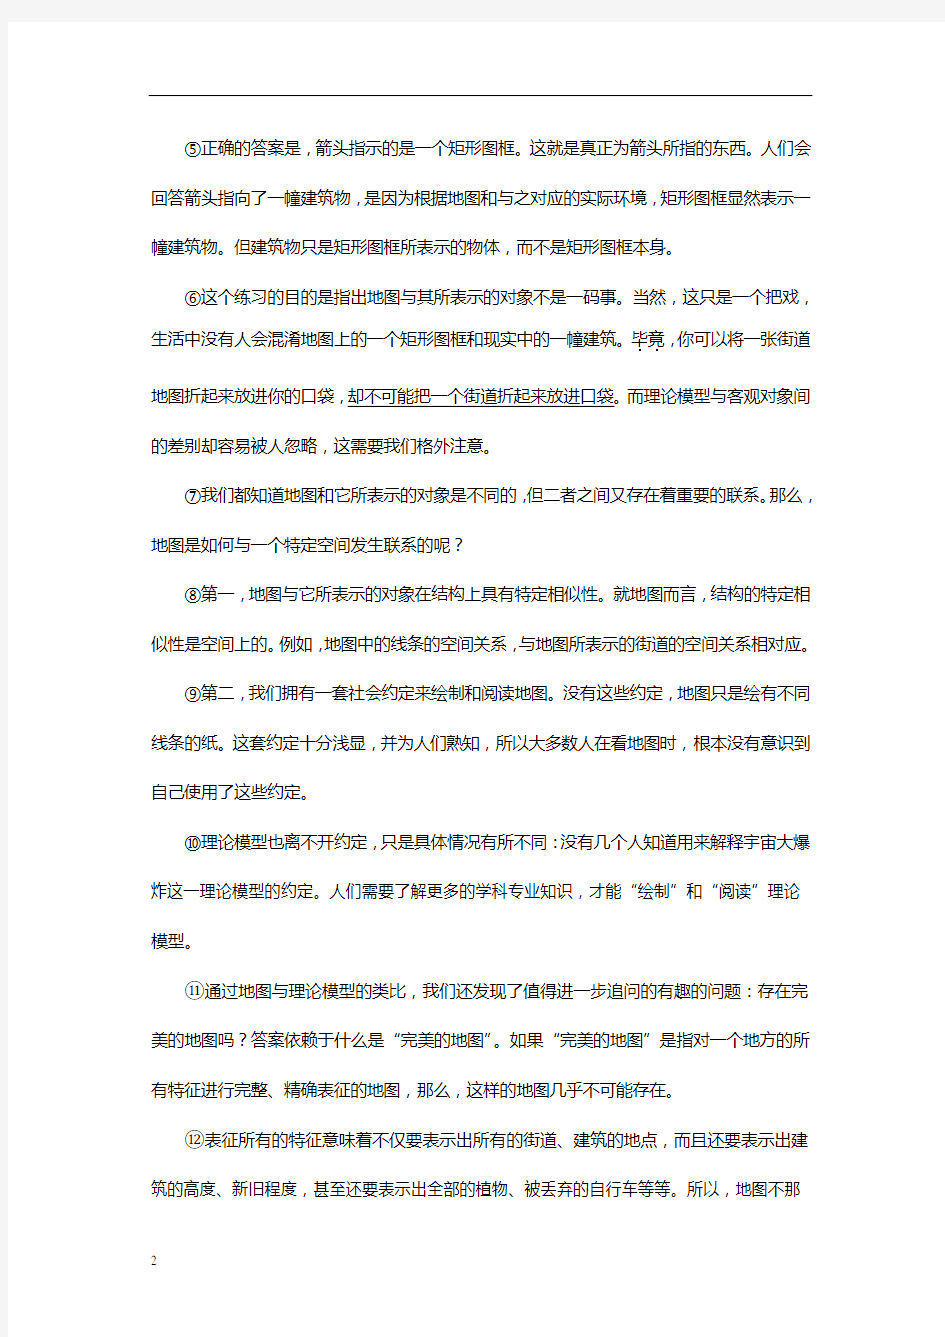 2015年上海高考语文试题(含答案)